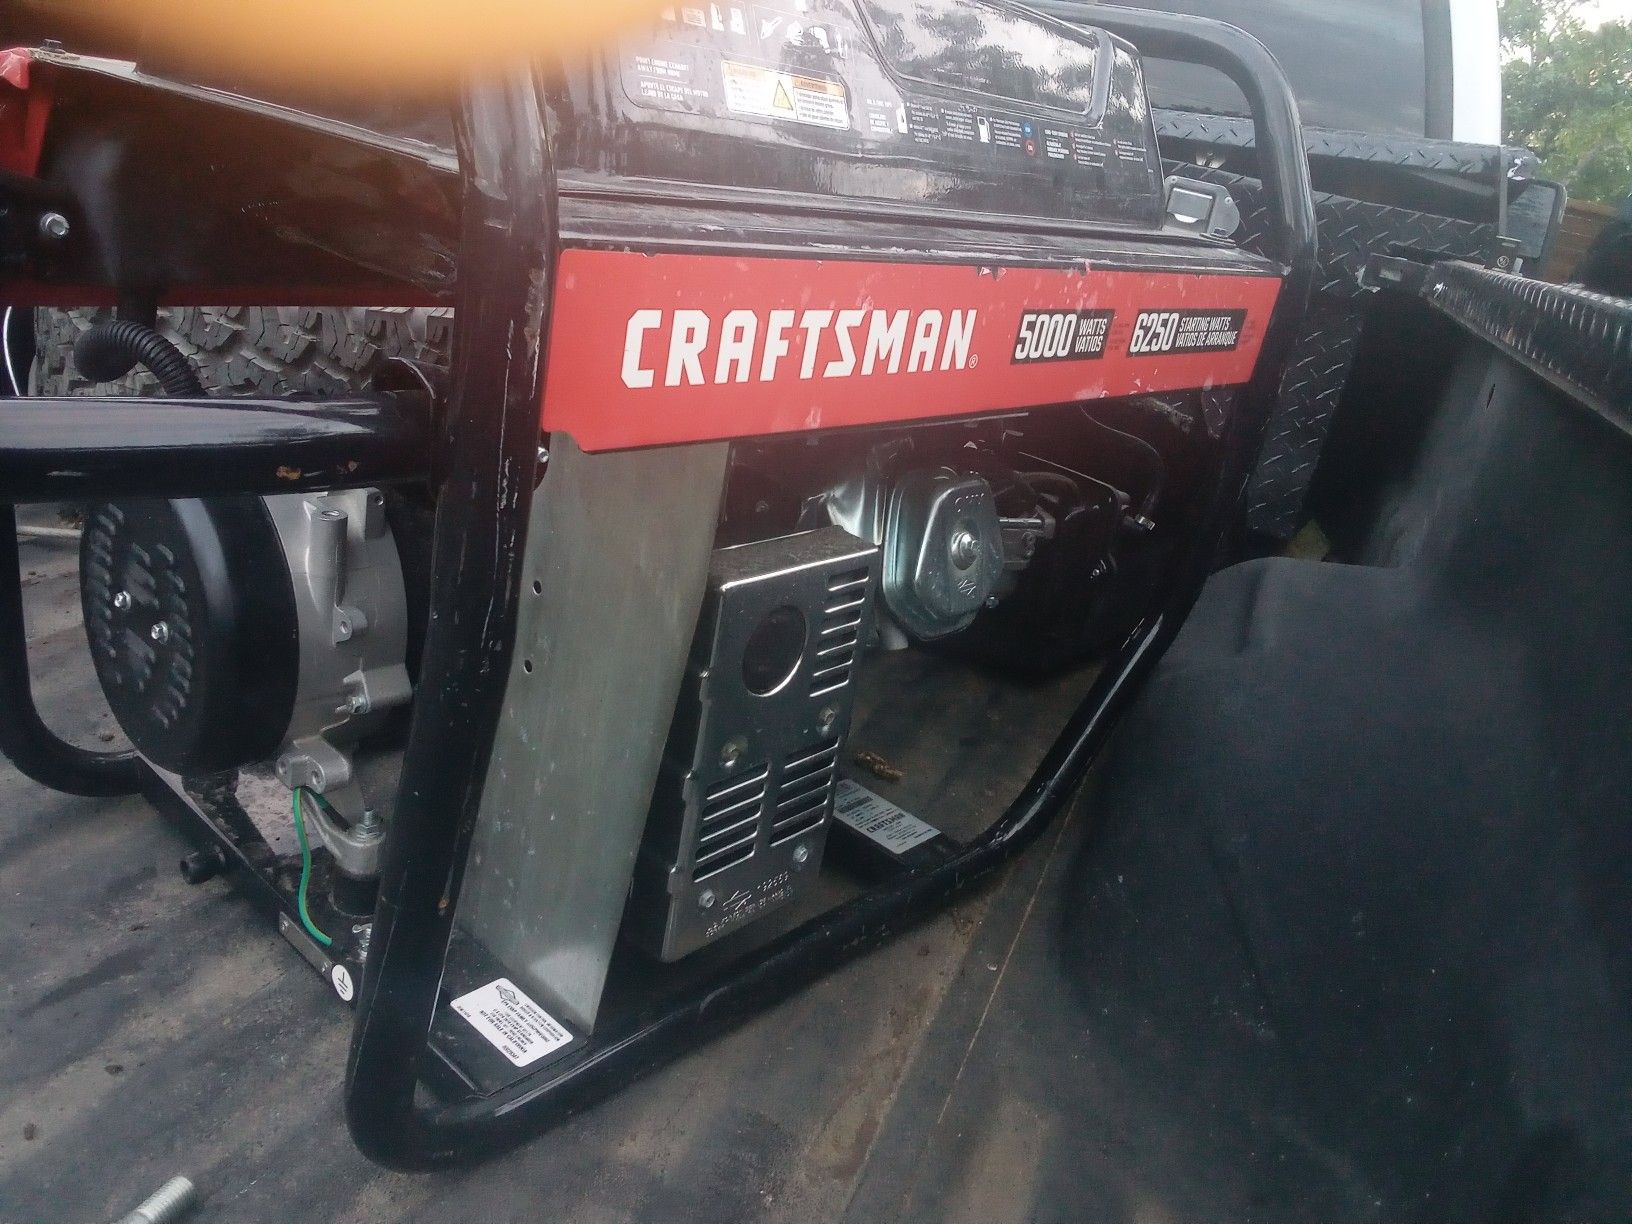 Craftsman 5000 wat generator